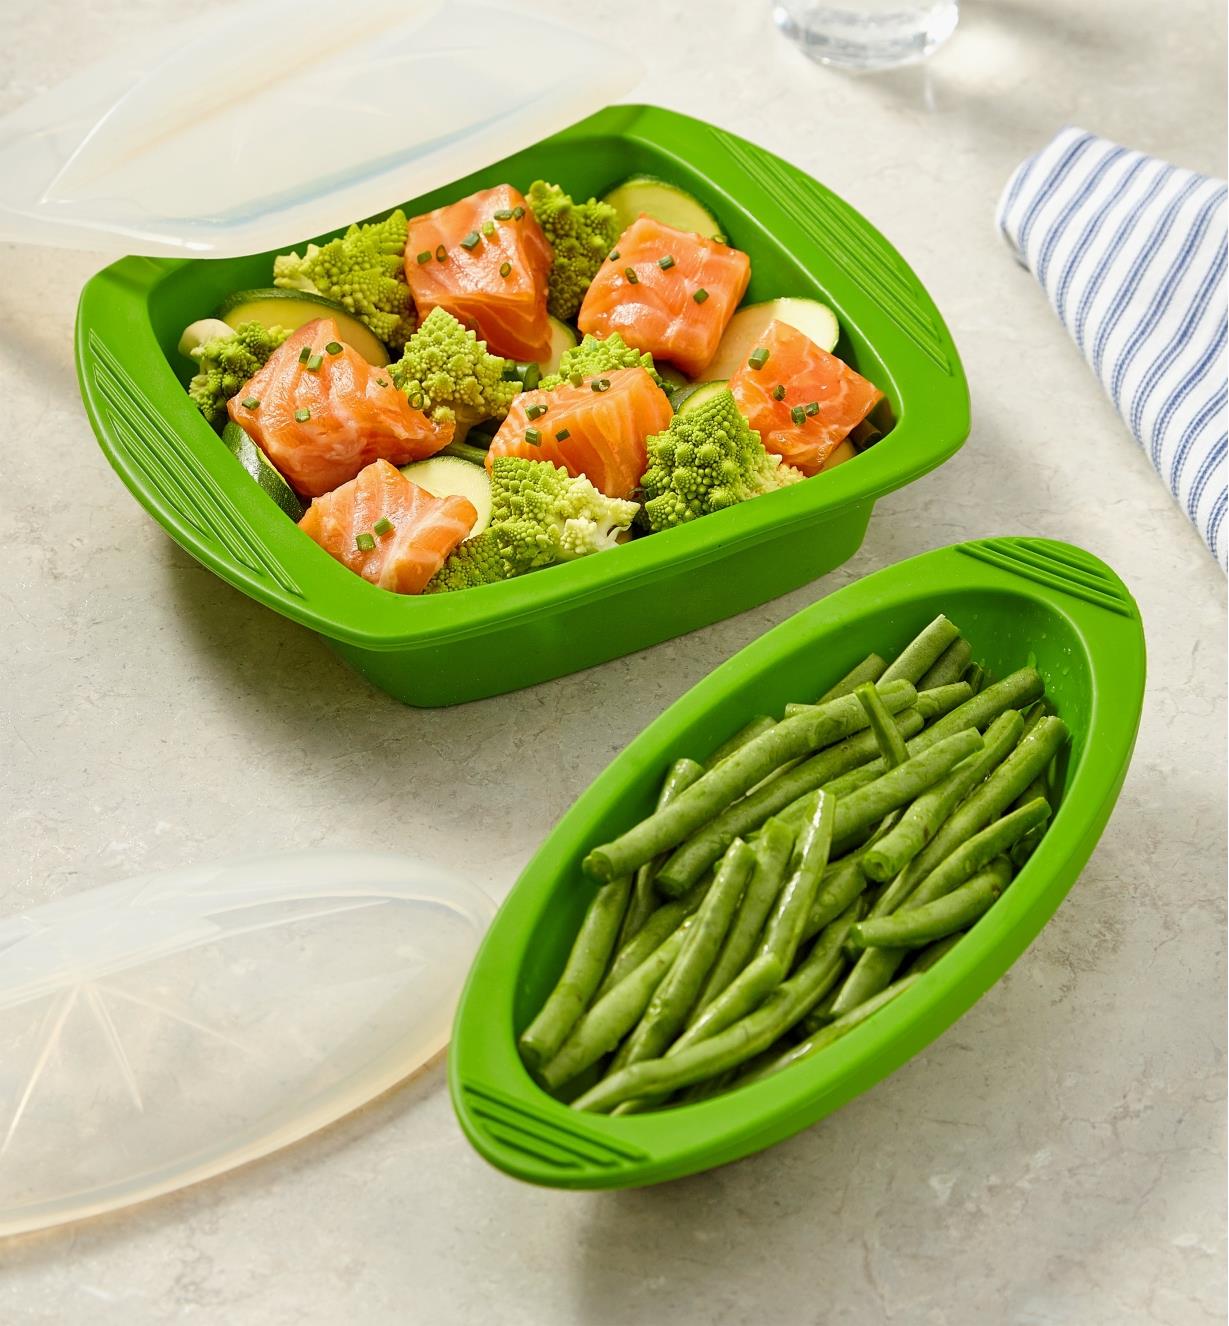 Deux papillotes en silicone utilisées pour cuire des haricots verts ainsi qu'un plat de saumon et de légumes